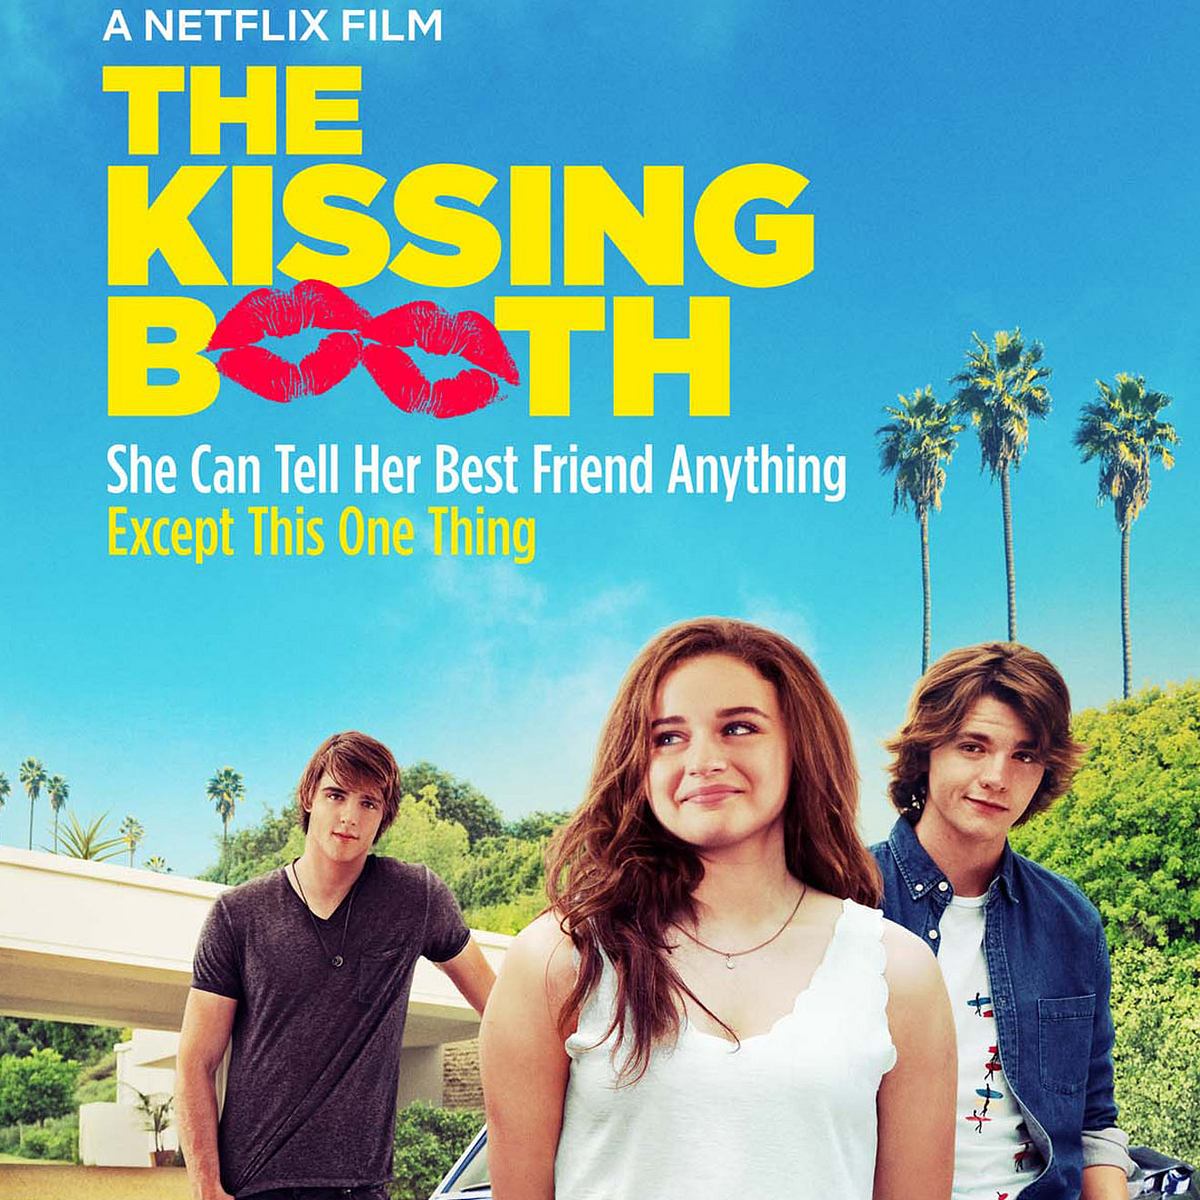 Die besten Netflix-Filme gegen Langeweile The Kissing Booth